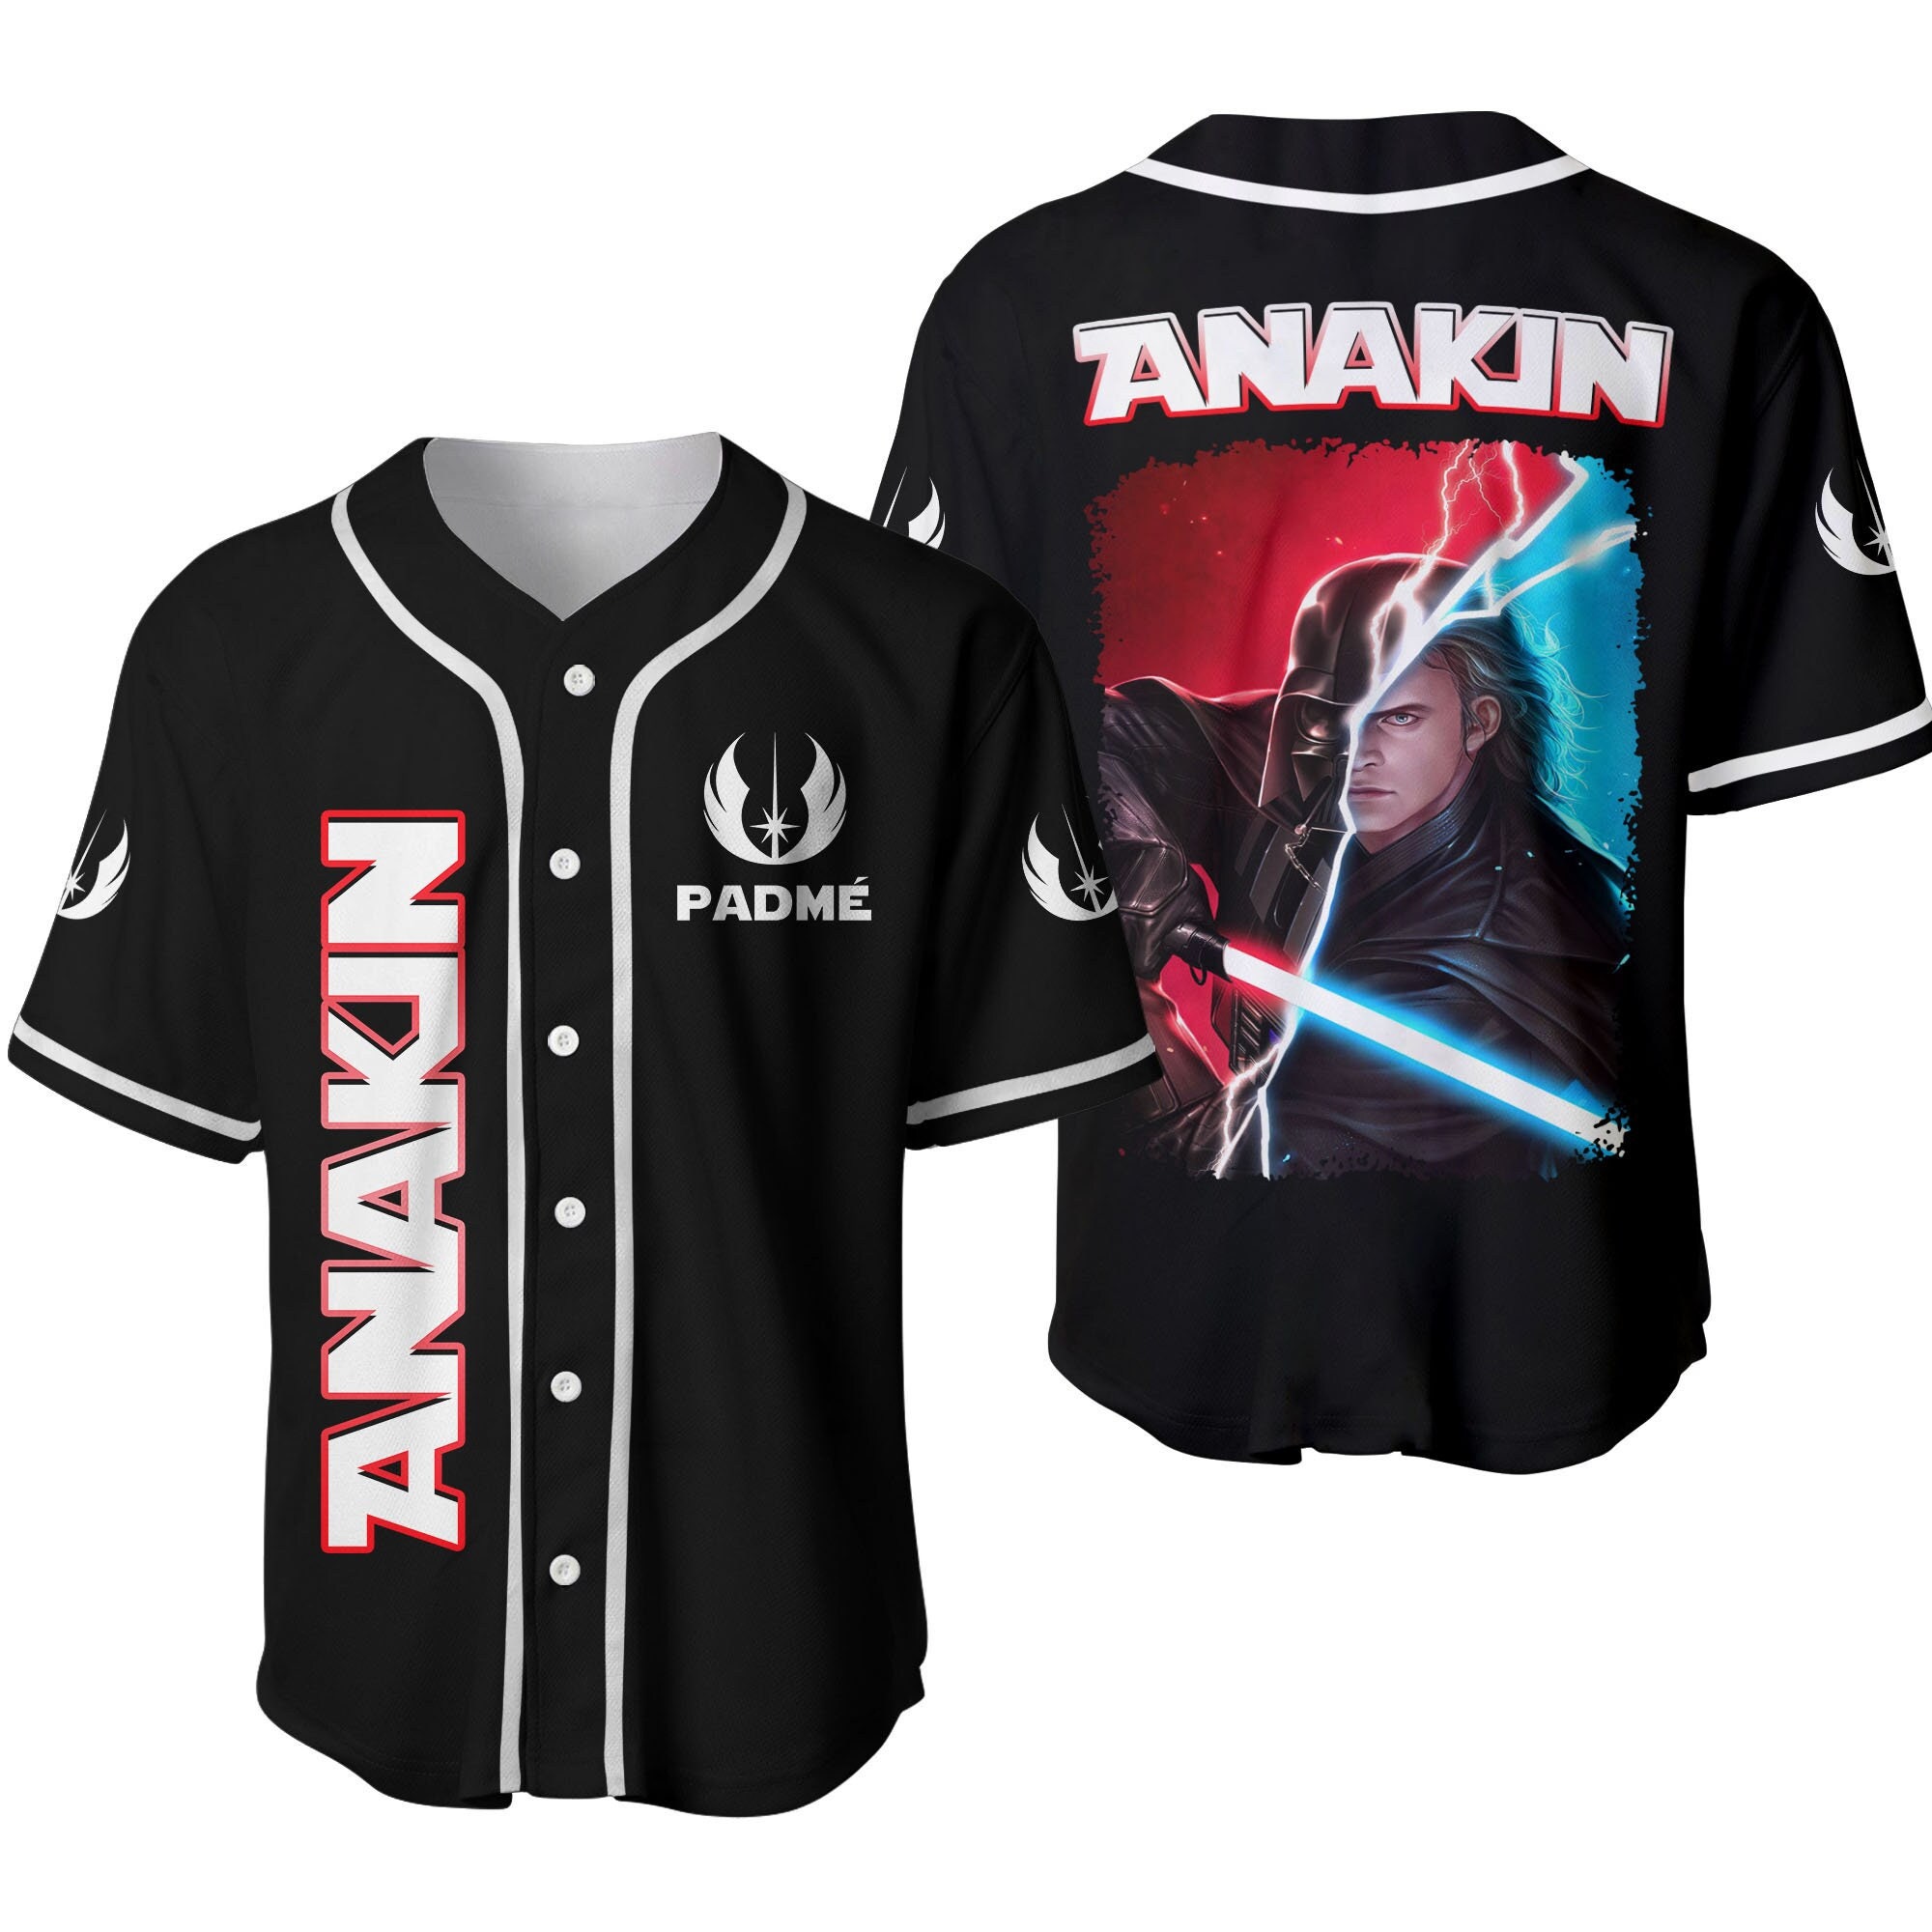 Star Wars Anakin Skywalker Darth Vader Black Disney Custom Baseball Jersey